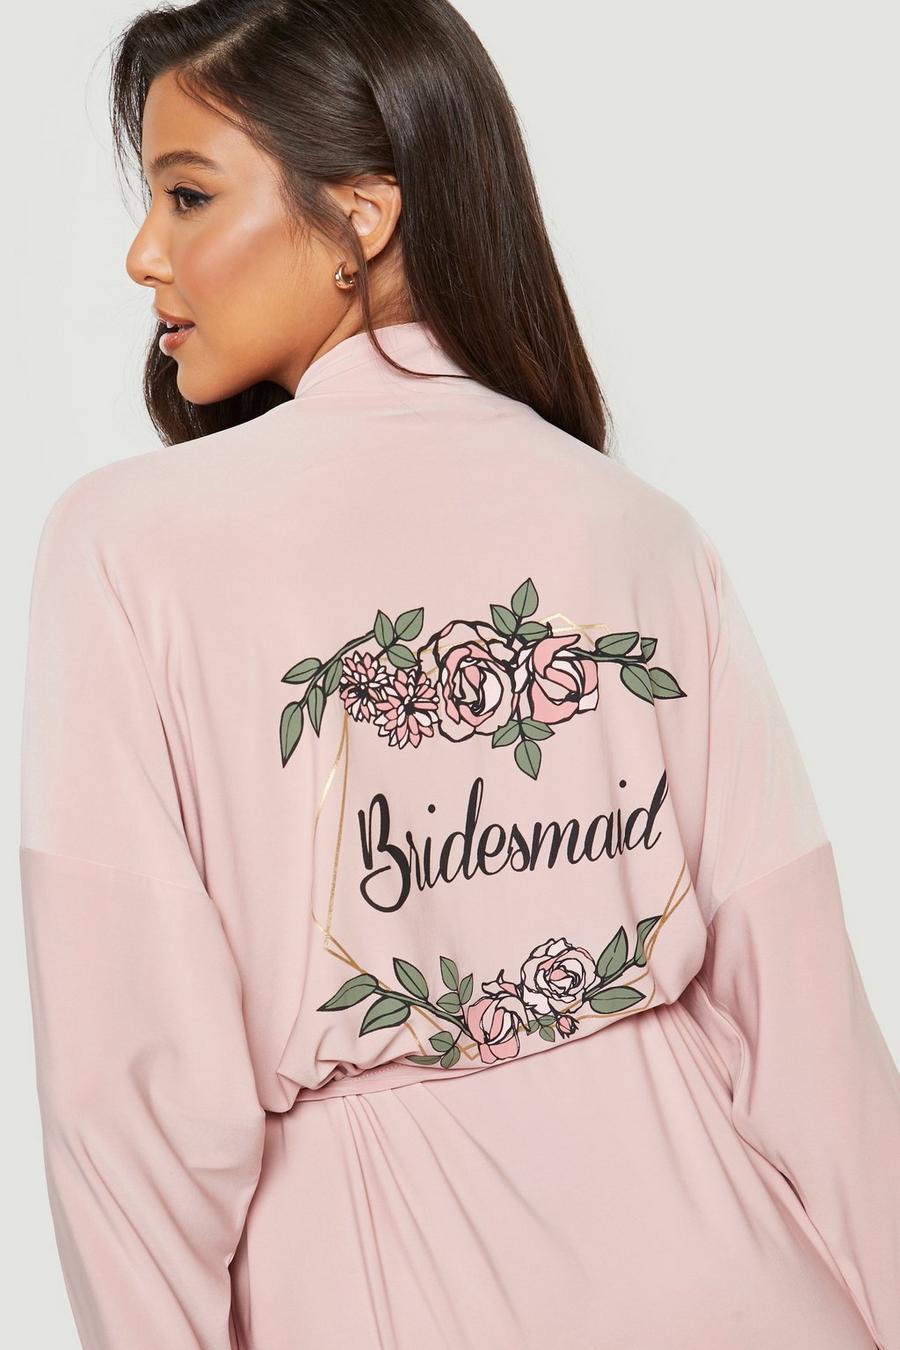 Vestaglia con scritta Bridesmaid laminata, stampa a fiori e finiture in pizzo, Blush rosa